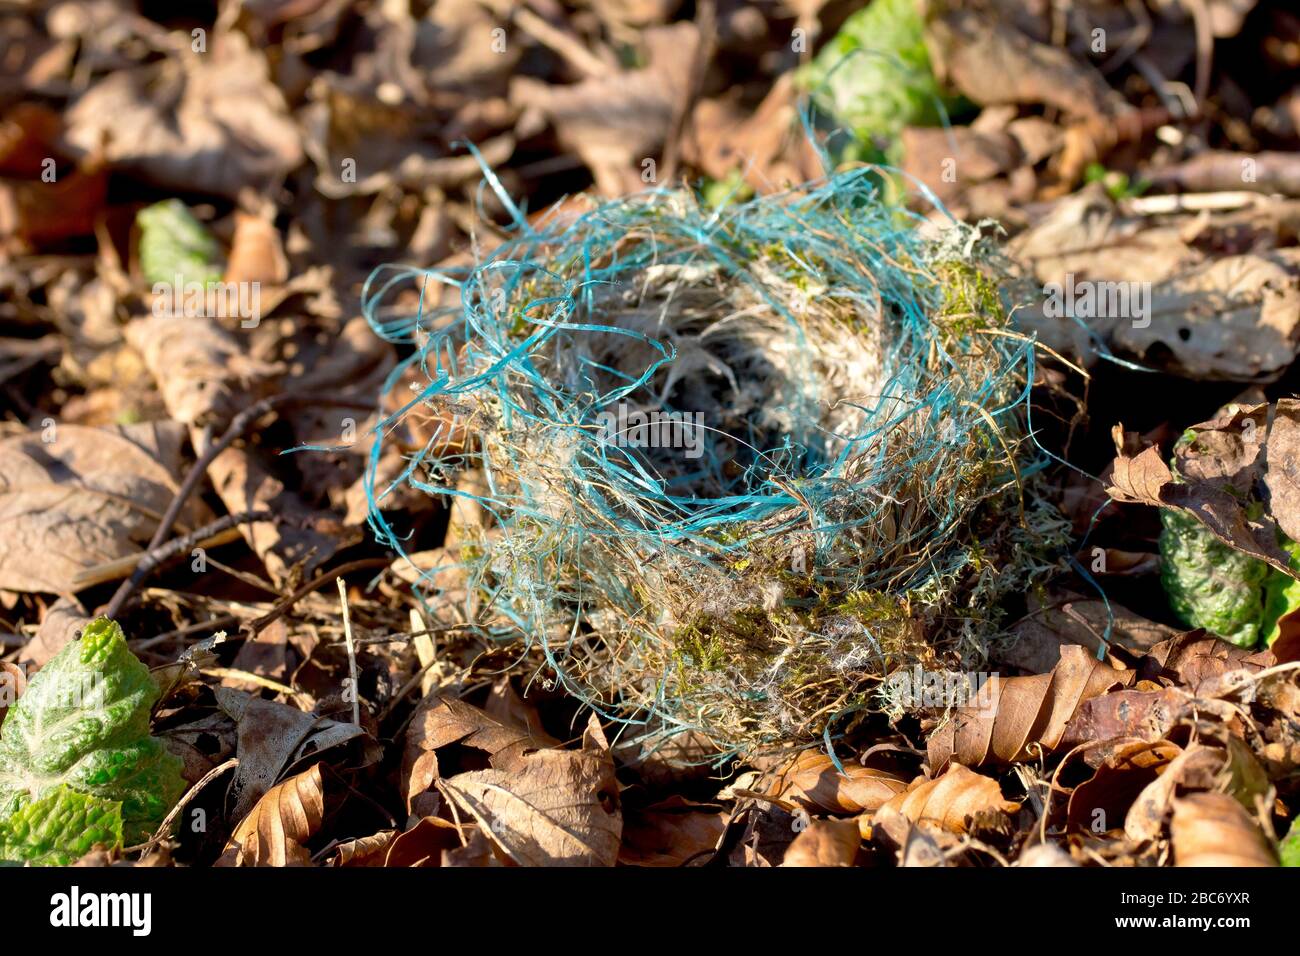 Un pequeño nido de pájaro, caído de un árbol y descansando en la basura de hojas. Curiosamente incluye hilos de plástico azul en su construcción. Foto de stock